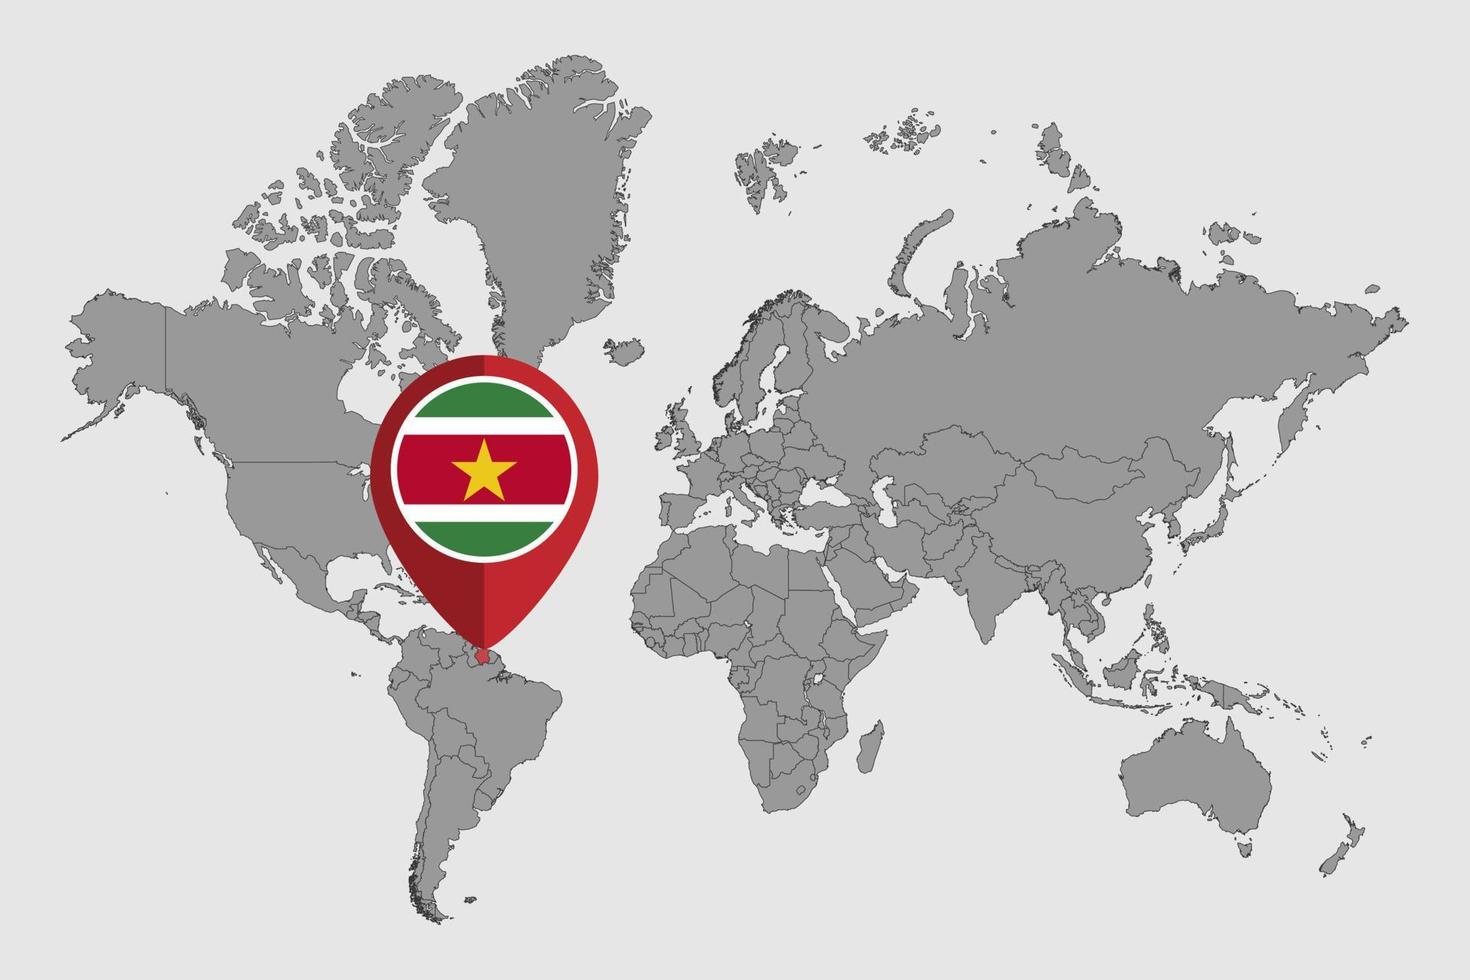 nålkarta med surinamflaggan på världskartan. vektor illustration.